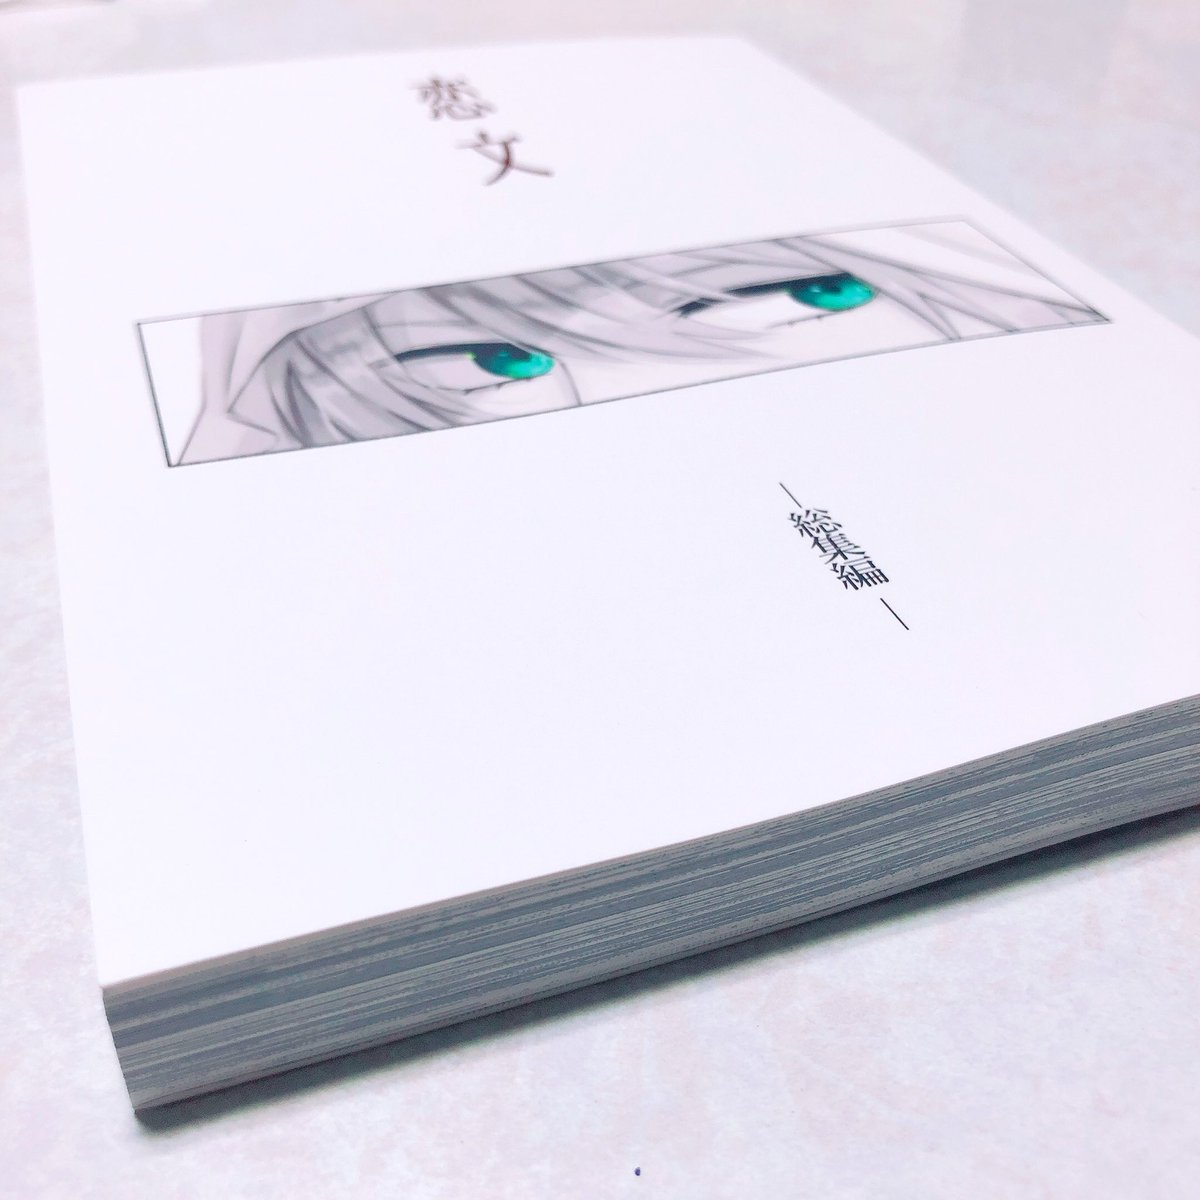 くりんば再録見本誌が届きました…!!

金沢印刷さん綺麗に刷って下さり本当に本当にありがとうございます😭🙏✨
(おまけノート等もありがとうございます…!!もったいなくて使えない綺麗さです✨✨✨) 